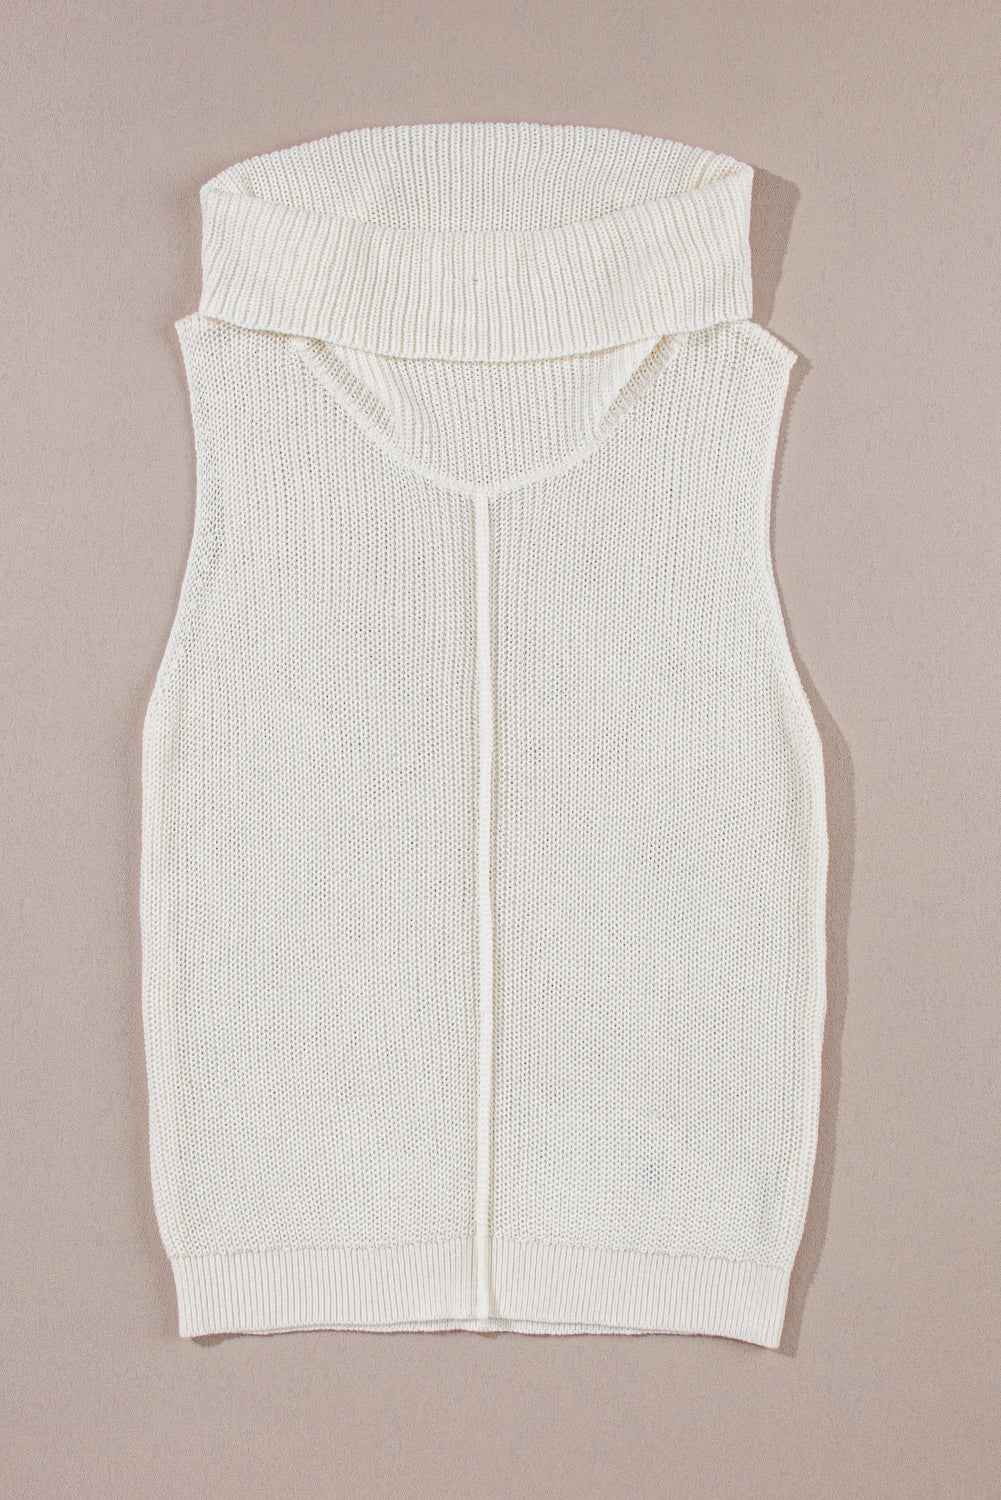 Gilet maglione bianco con collo ad anello e cucitura centrale